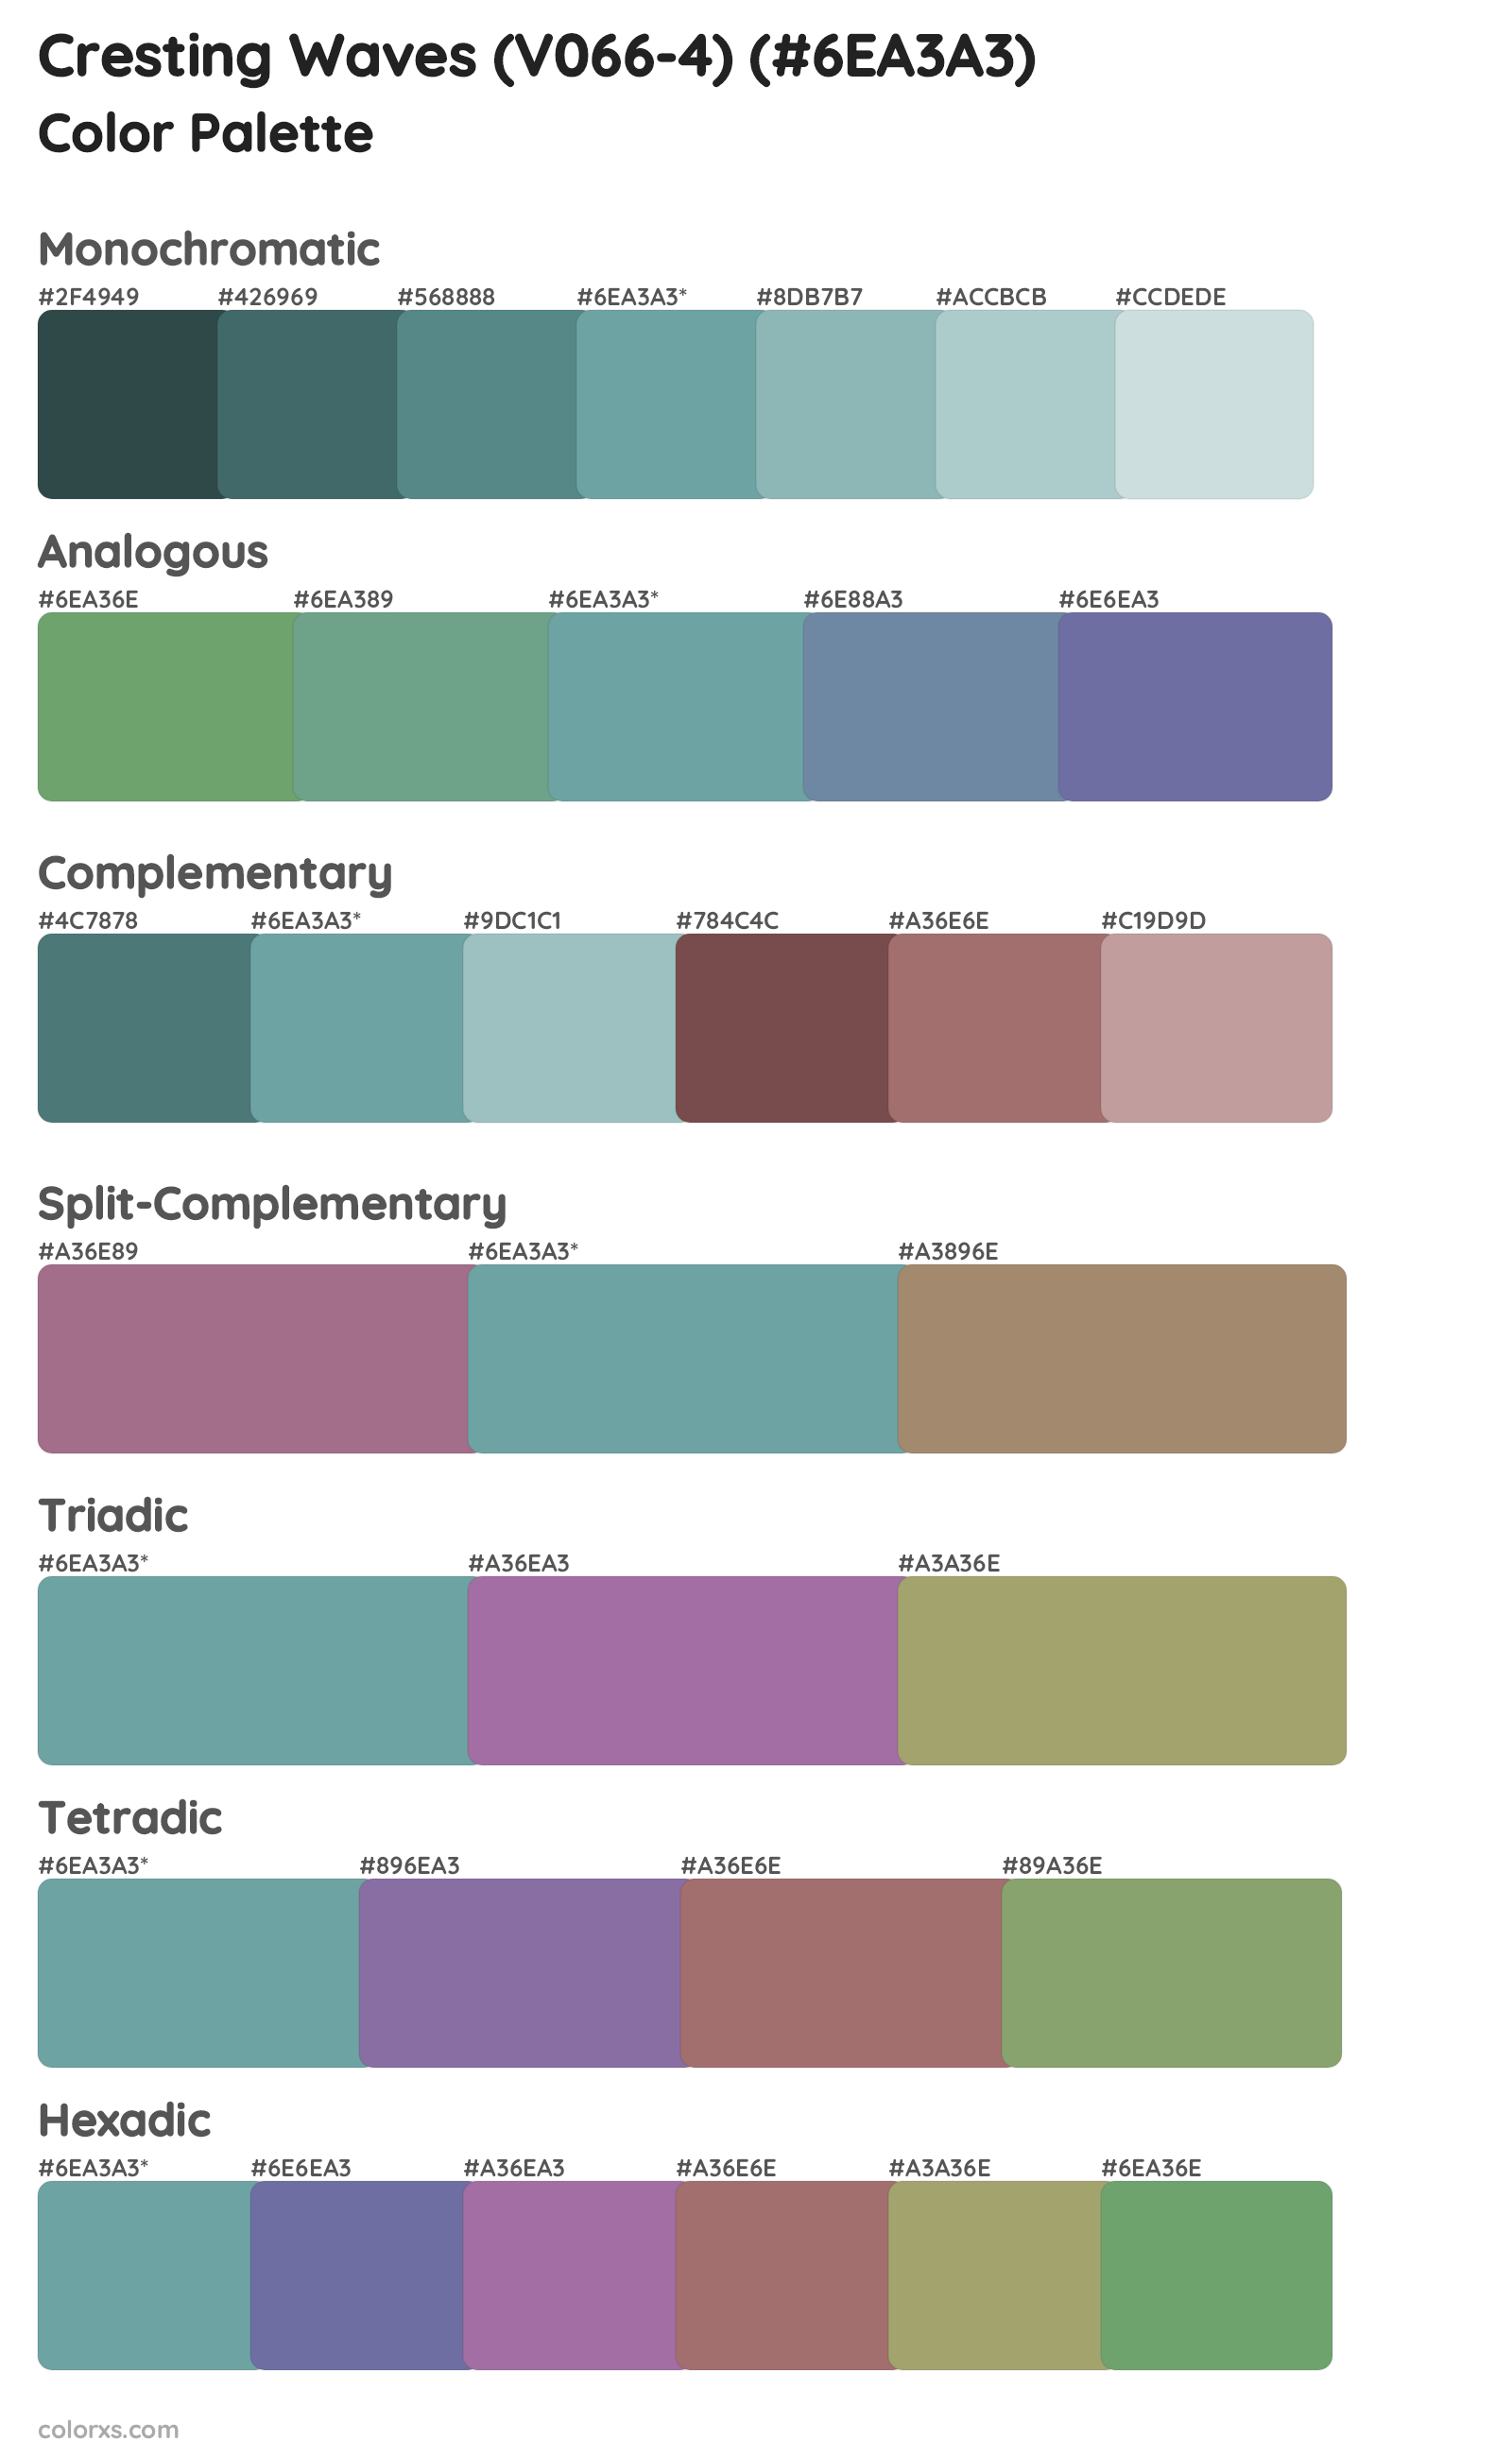 Cresting Waves (V066-4) Color Scheme Palettes